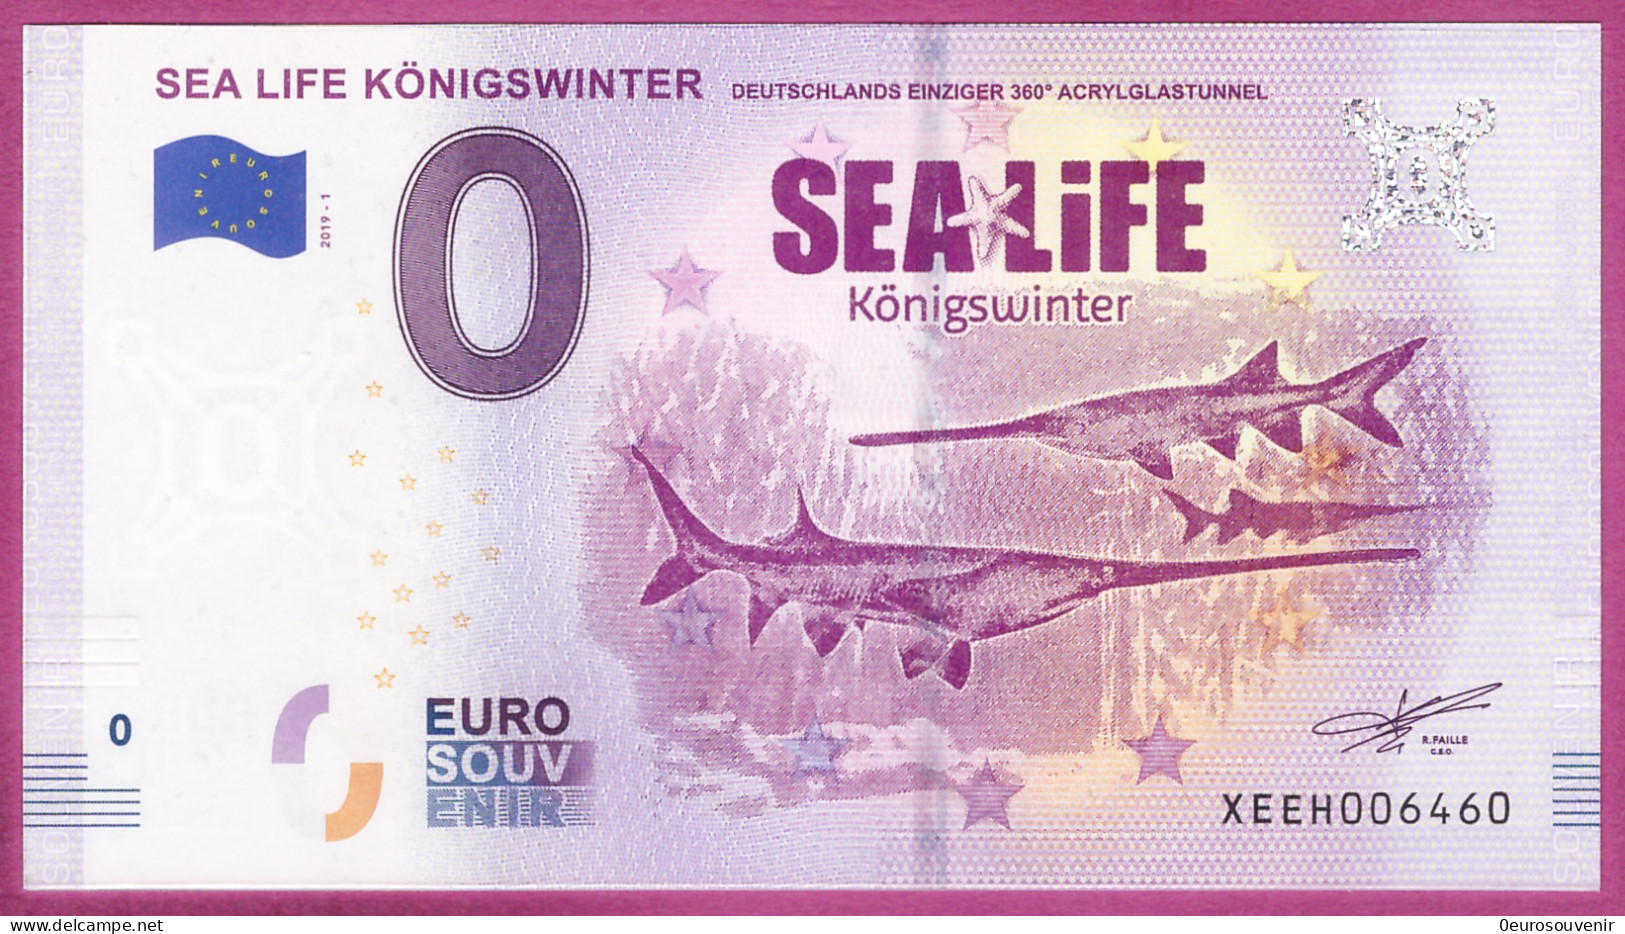 0-Euro XEEH 2019-1 SEA LIFE KÖNIGSWINTER - DEUTSCHLANDS EINZIGER 360° ACRYLGLASTUNNEL - Pruebas Privadas